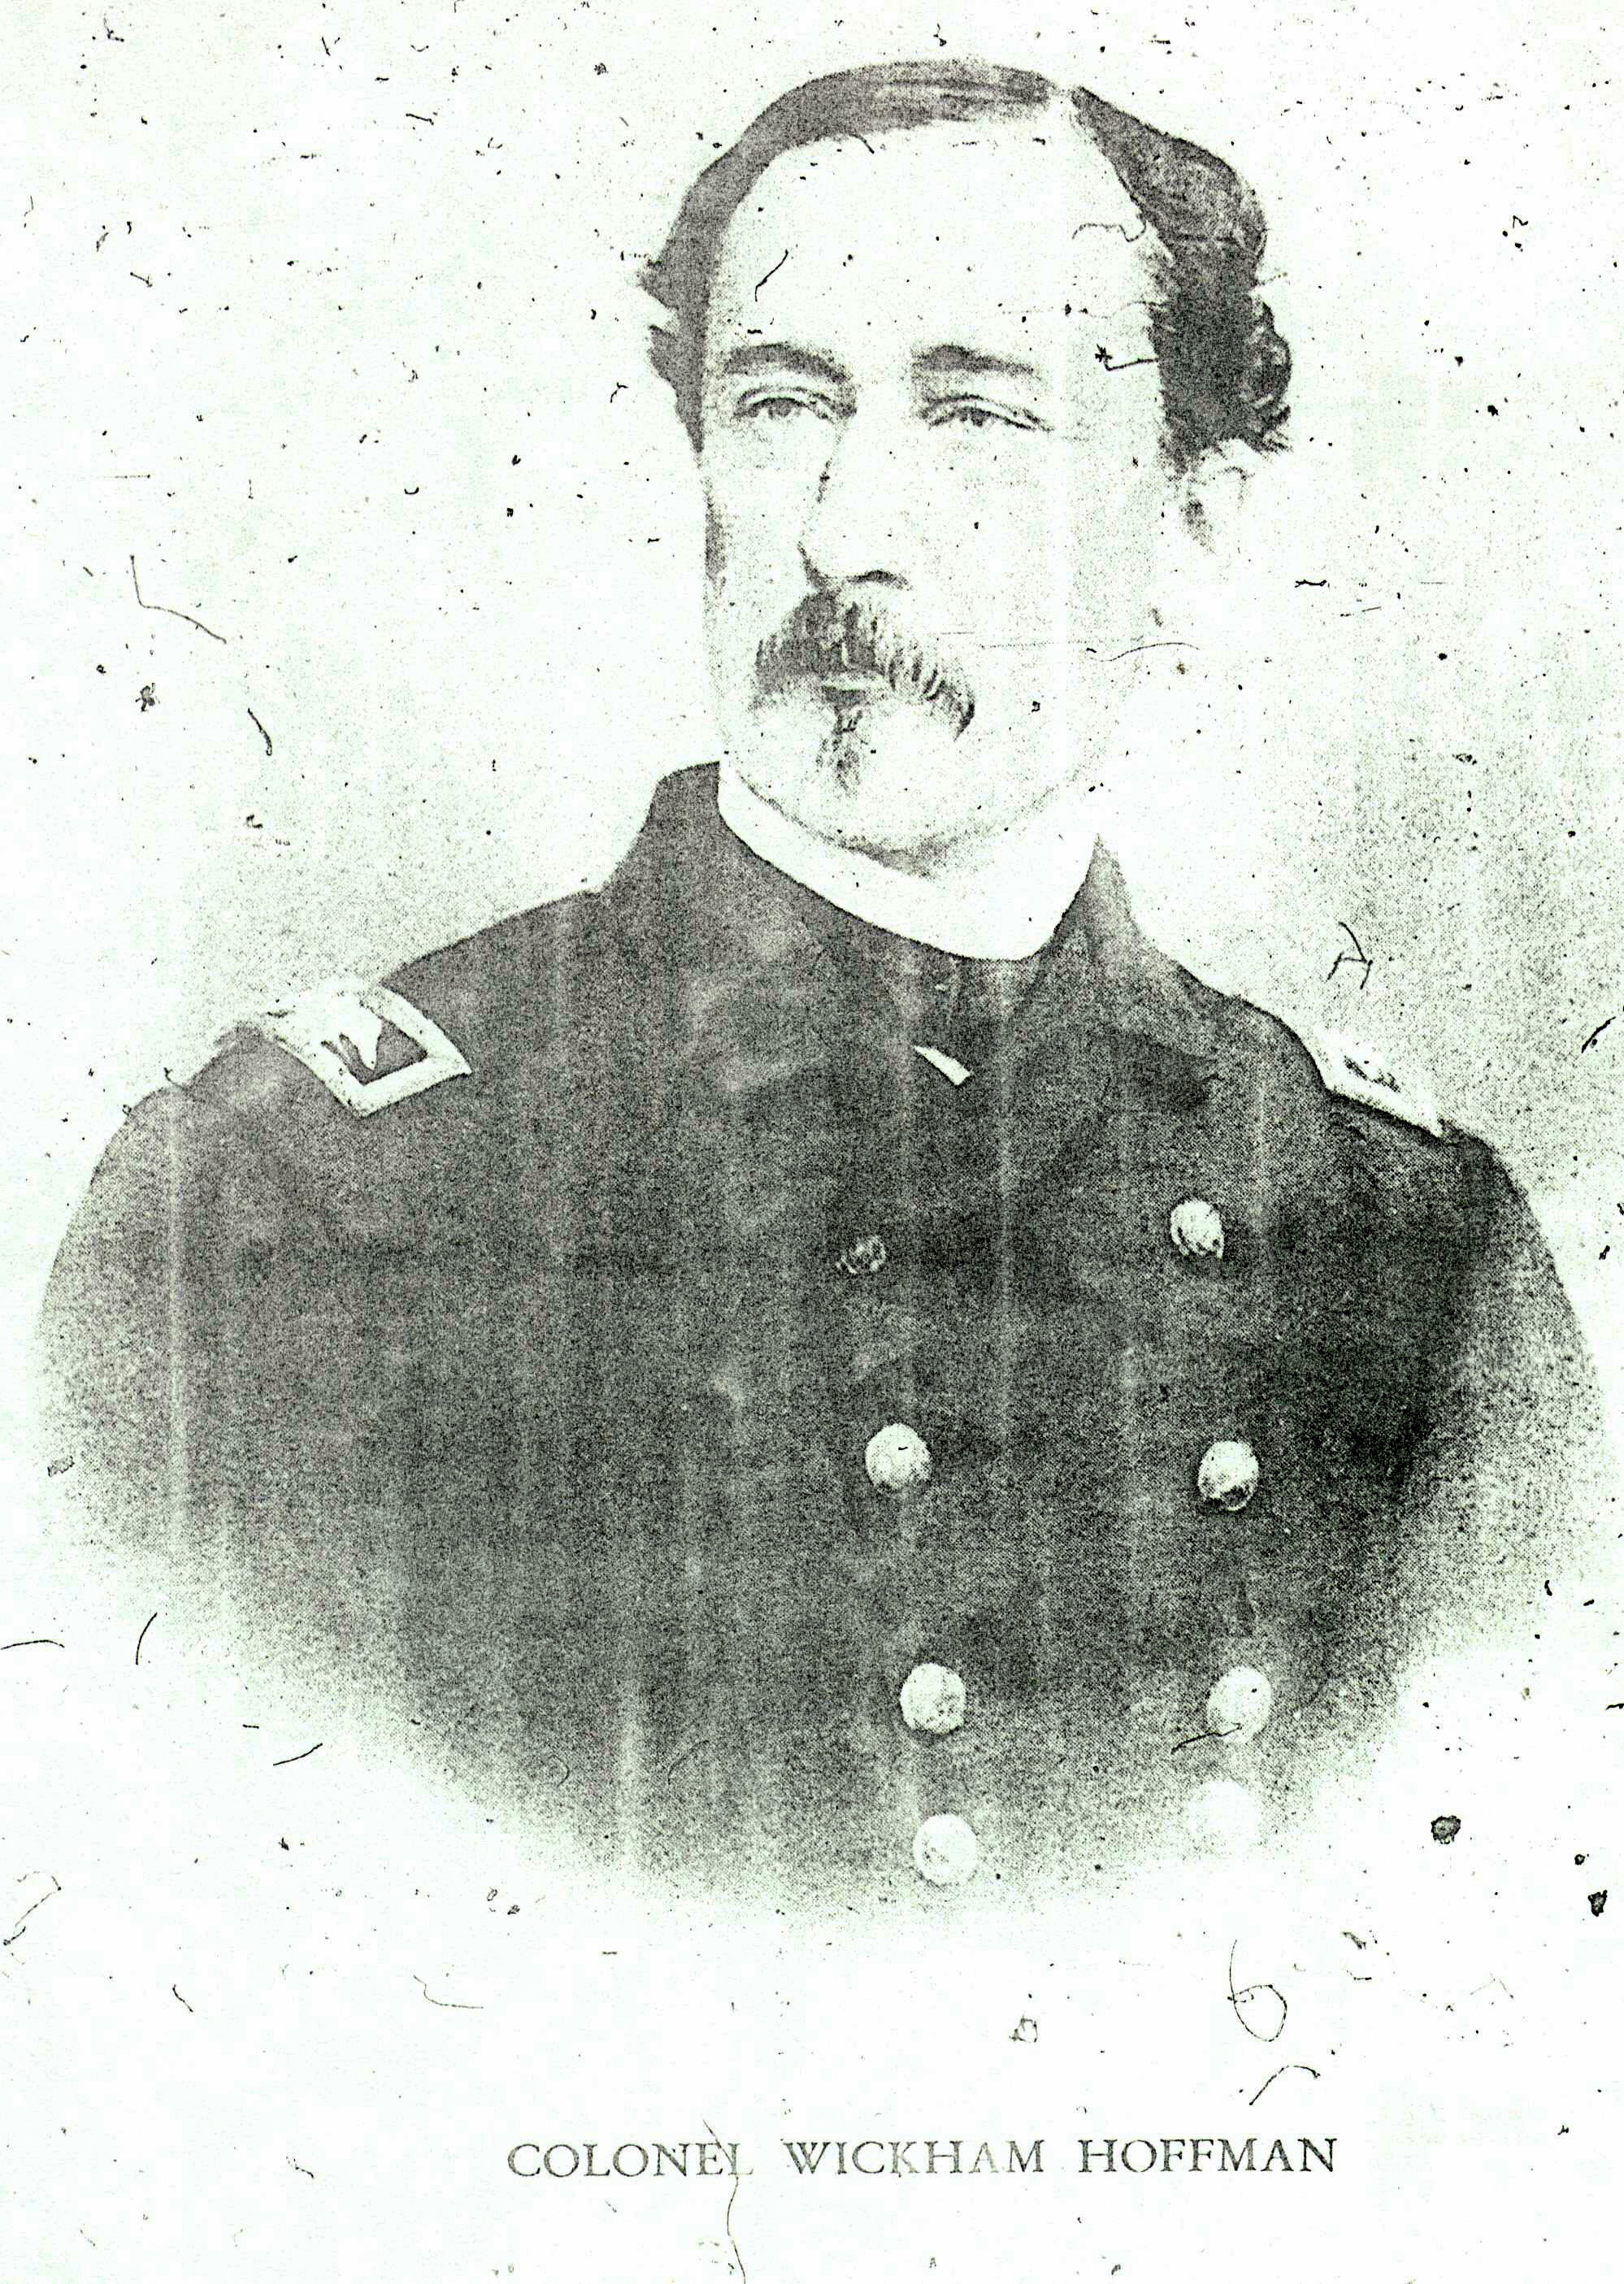 Colonel Wickham Hoffman